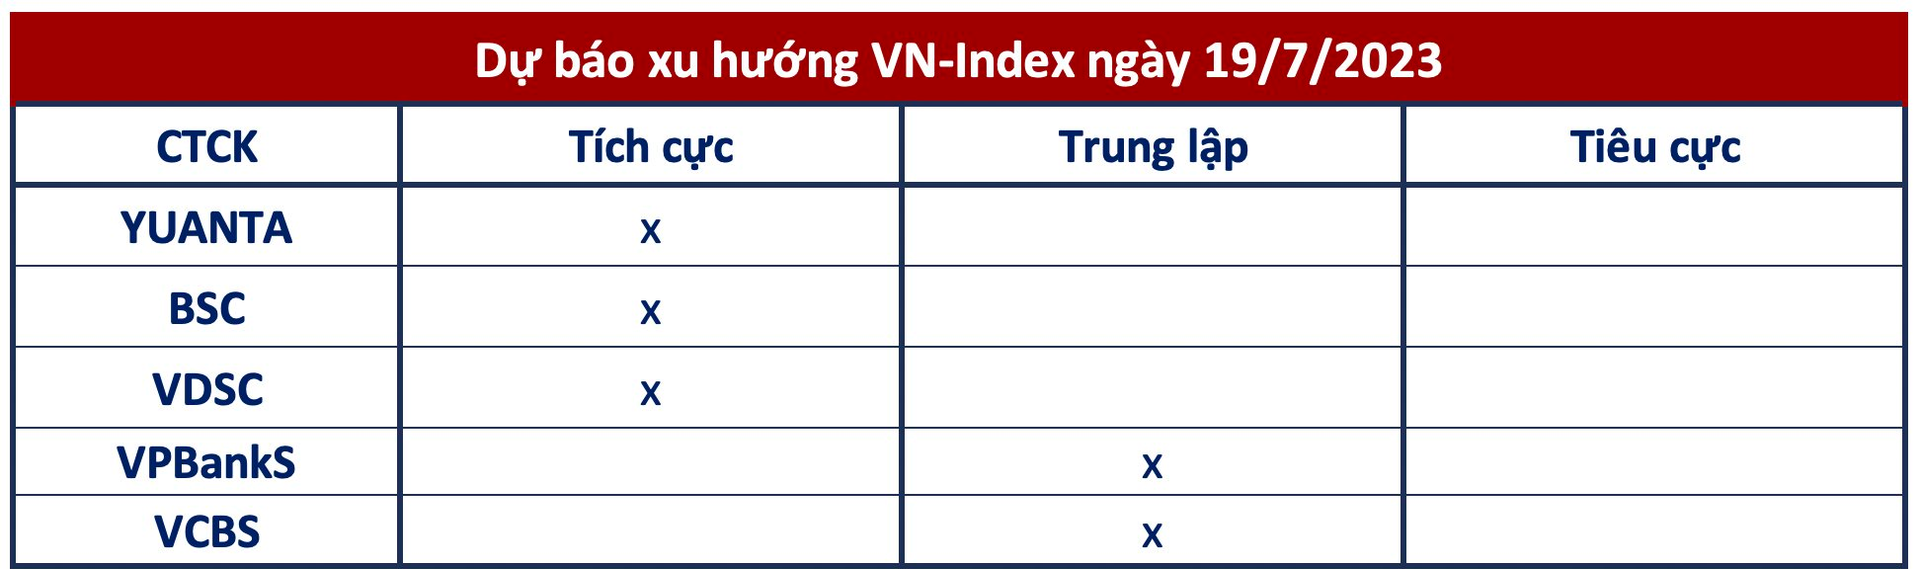 Góc nhìn CTCK: Cổ phiếu bất động sản trong xu hướng tích cực, VN-Index hướng tới 1.200 điểm - Ảnh 1.